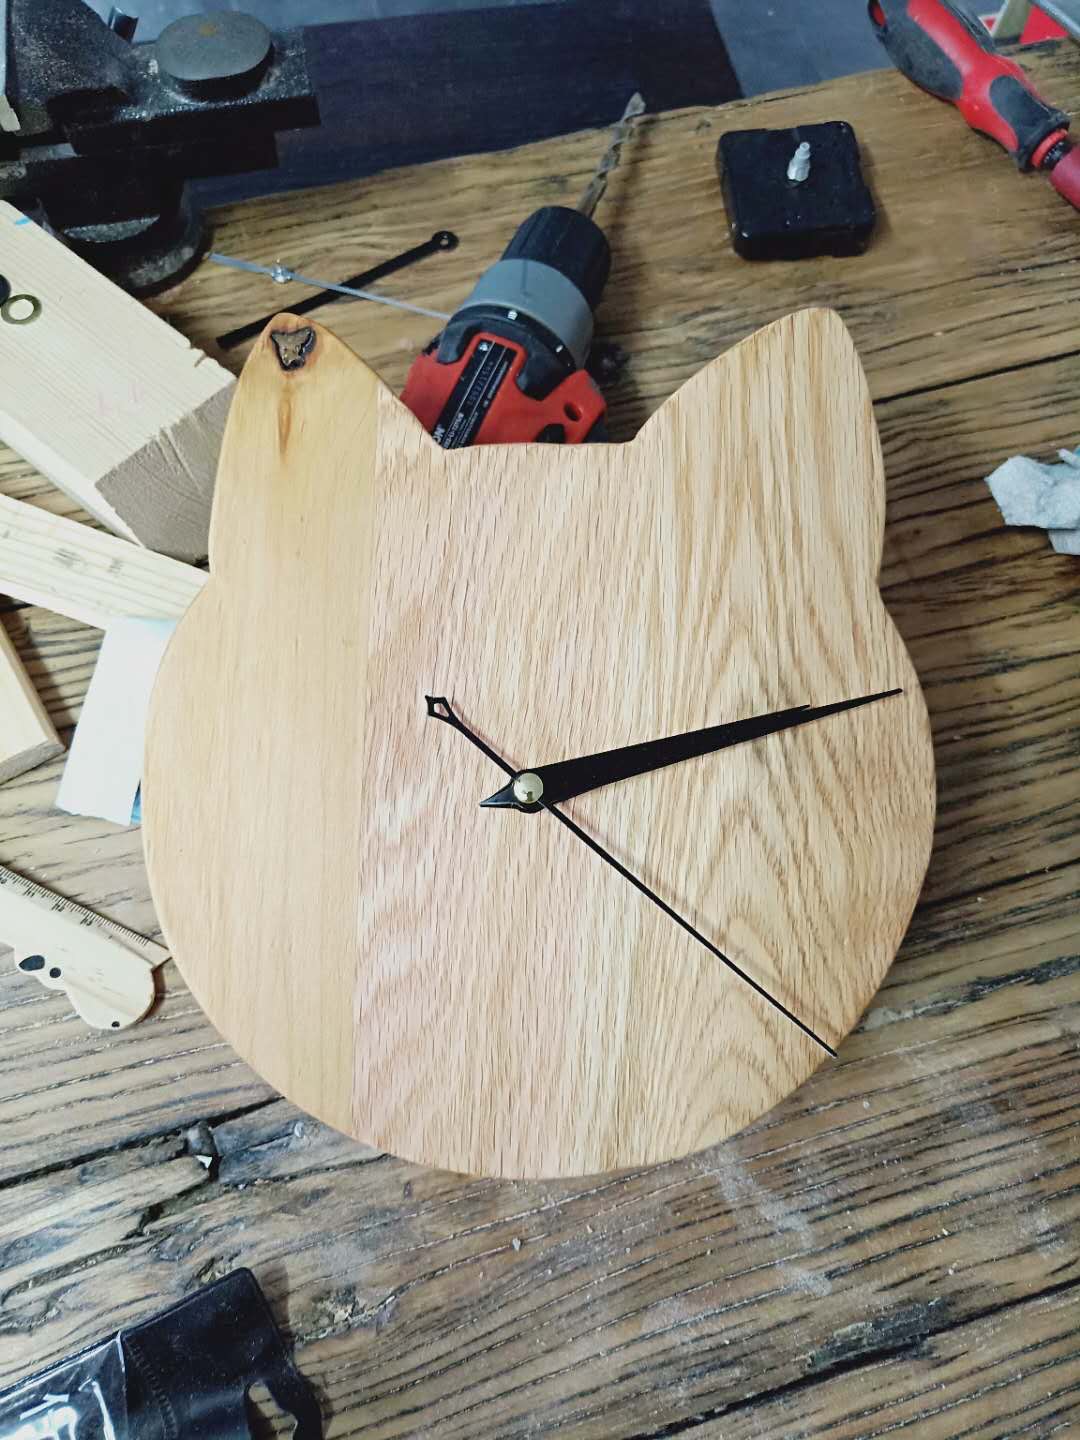 即兴用几块废木板拼接的一款挂钟